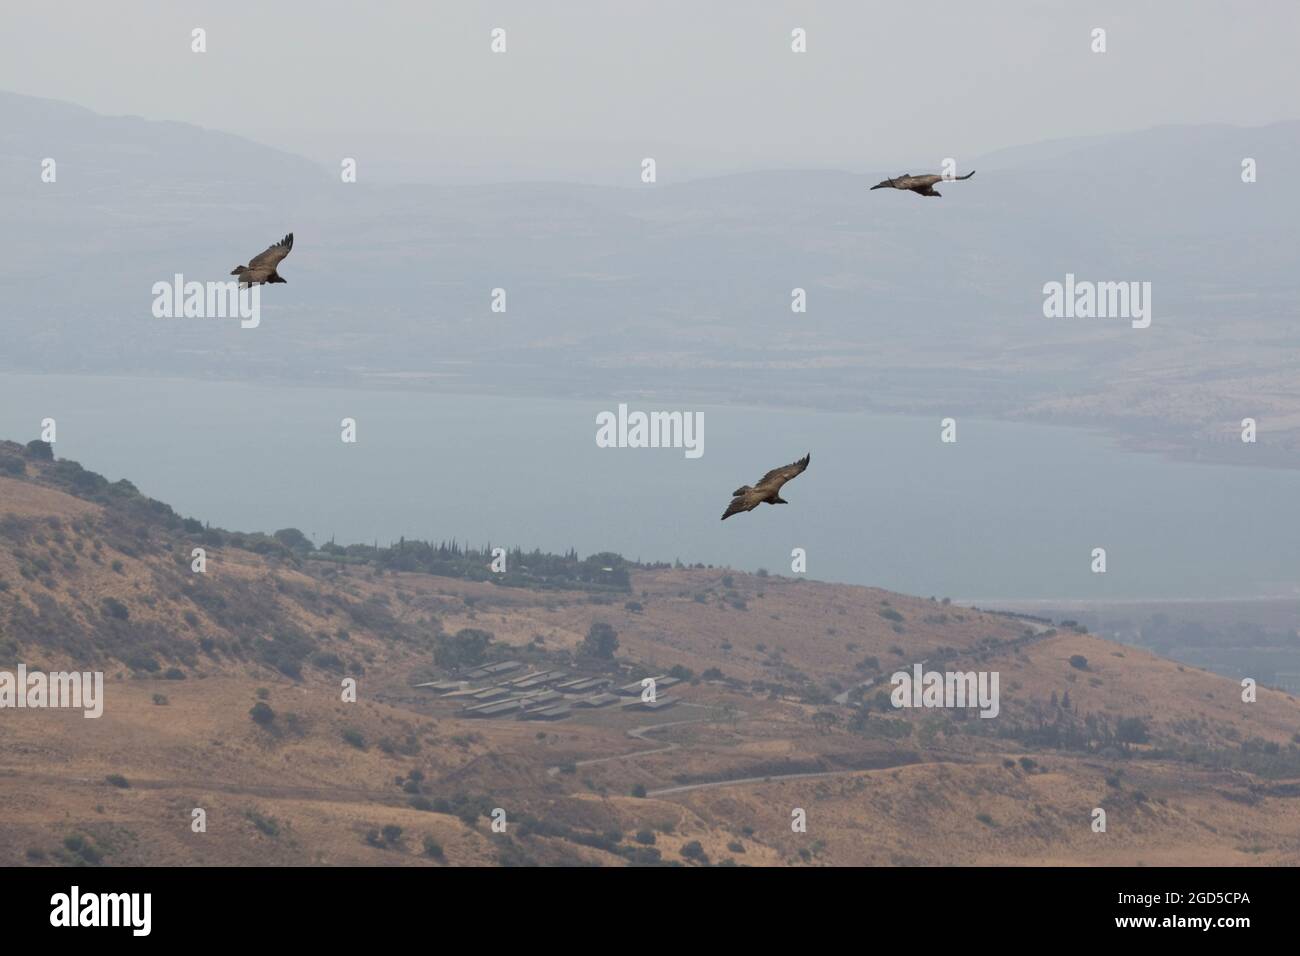 Gänsegeier (Gyps fulvus) im Flug. Fotografiert auf dem Berg Arbel das Galiläische Meer im Hintergrund Stockfoto